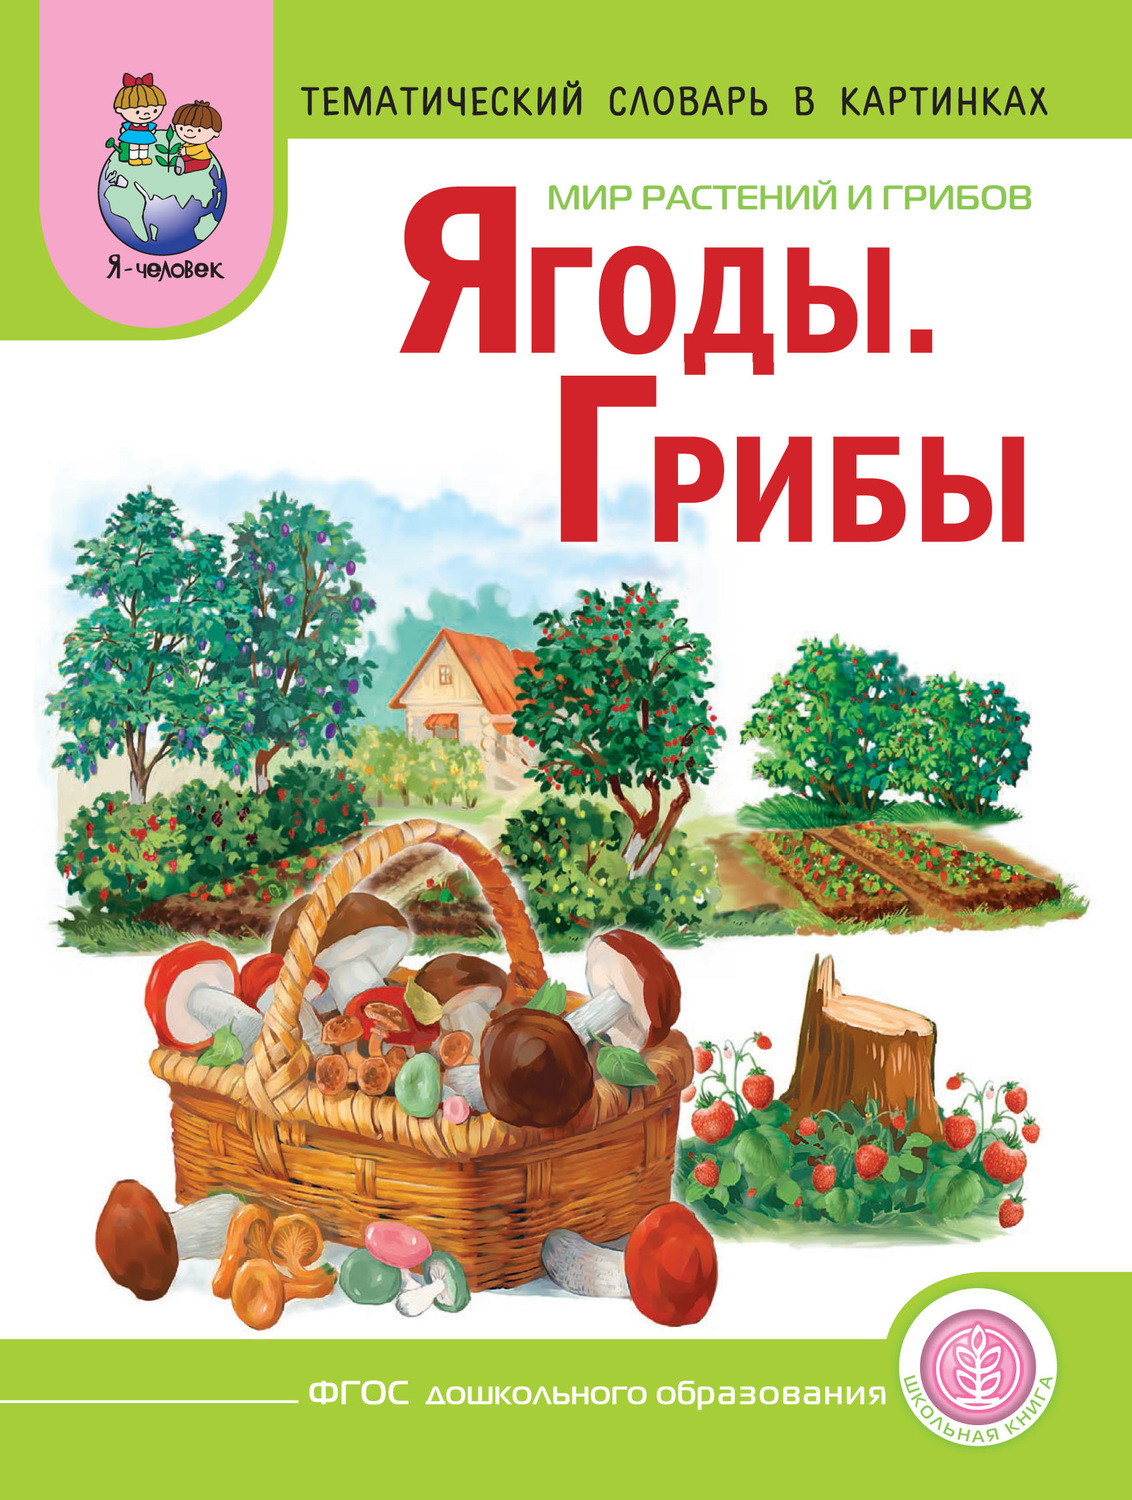 Редкие грибы из красной книги россии фото и названия и описание внешности